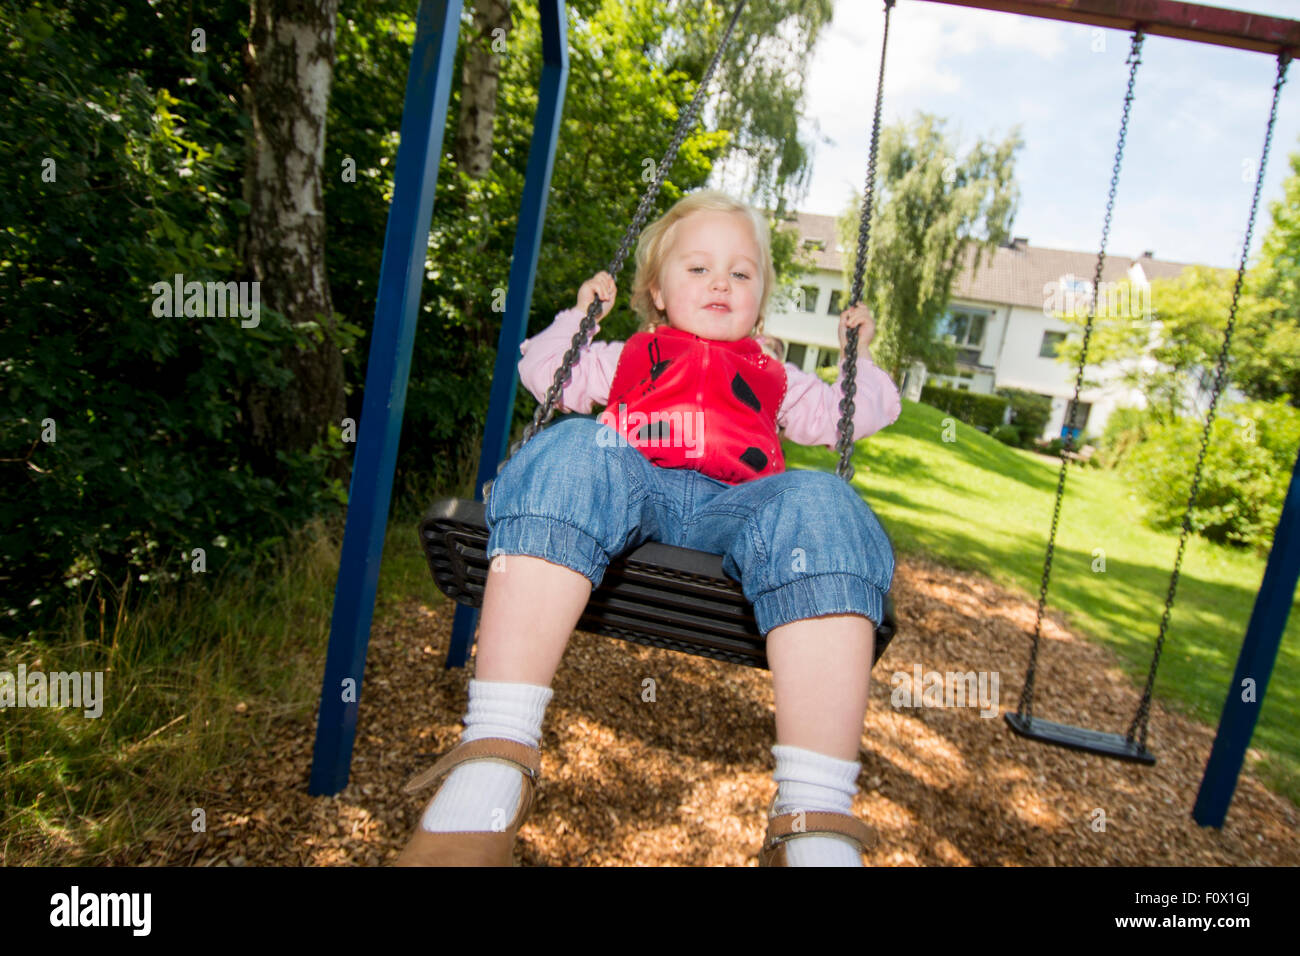 Little girl on swing. Stock Photo